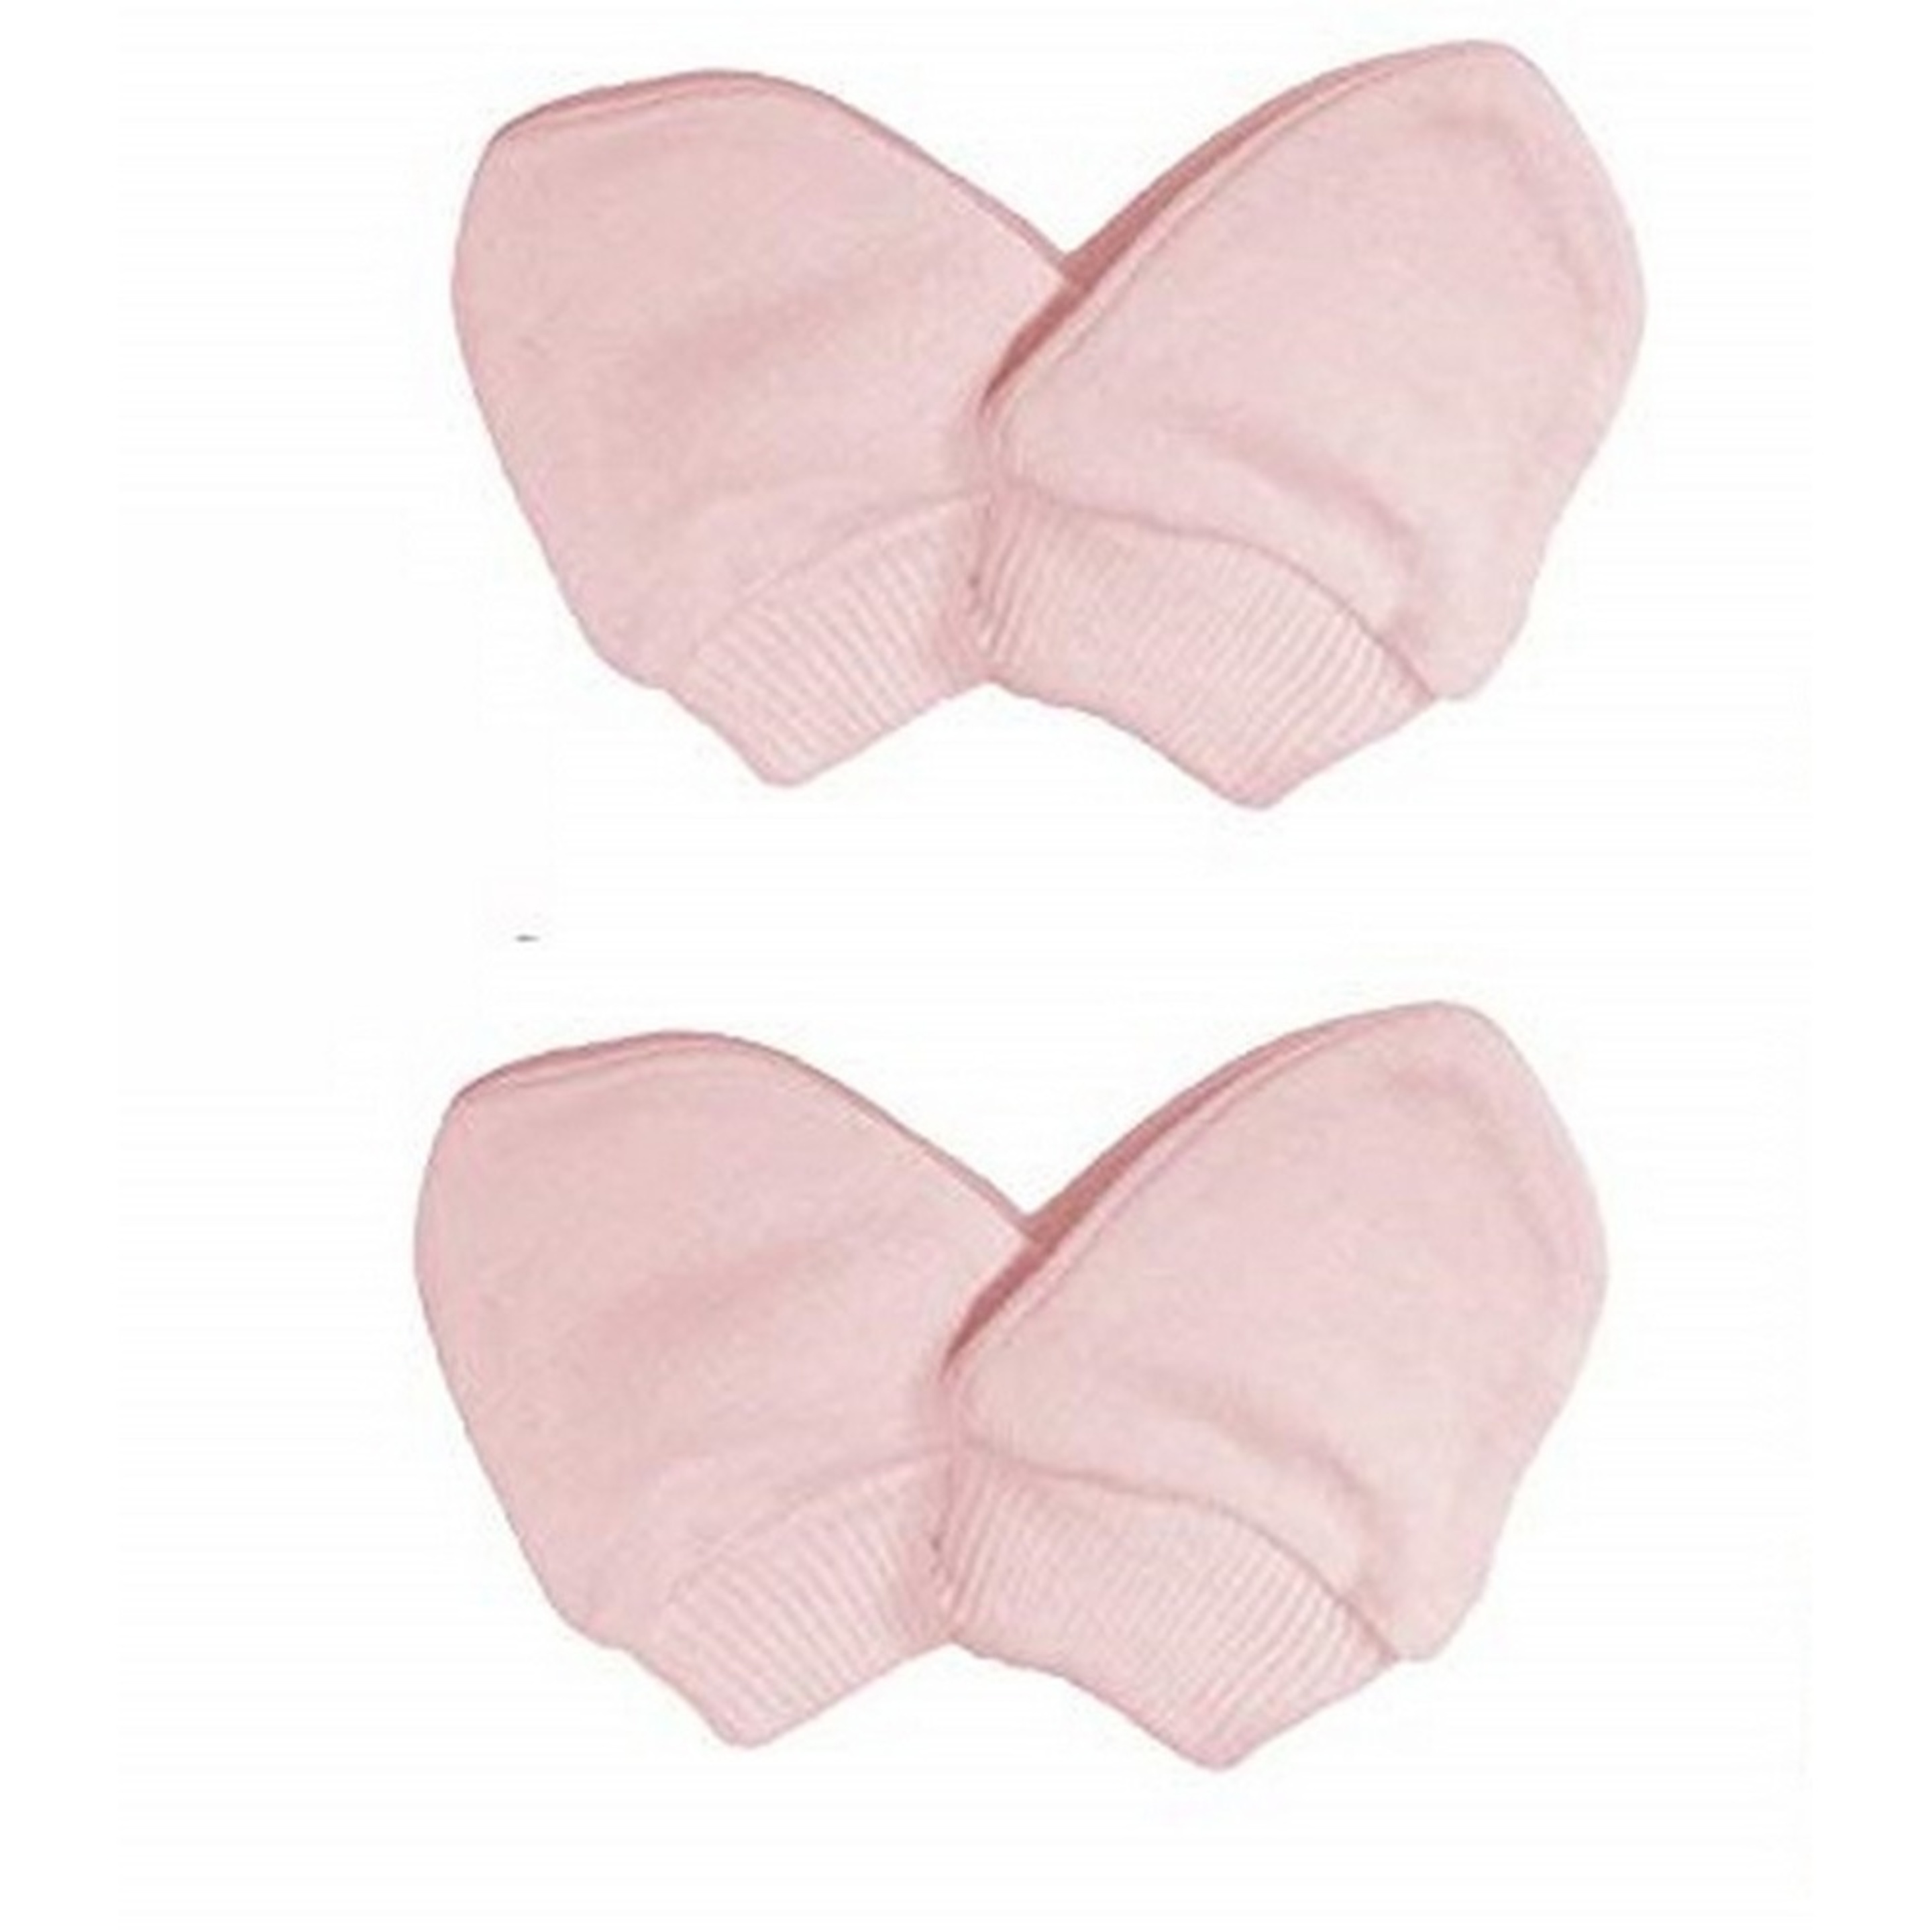 Manoplas Elásticas 100% Algodón Para Recién Nacido (Pack De 2 Pares) Universal Textiles (Rosa) - rosa  MKP